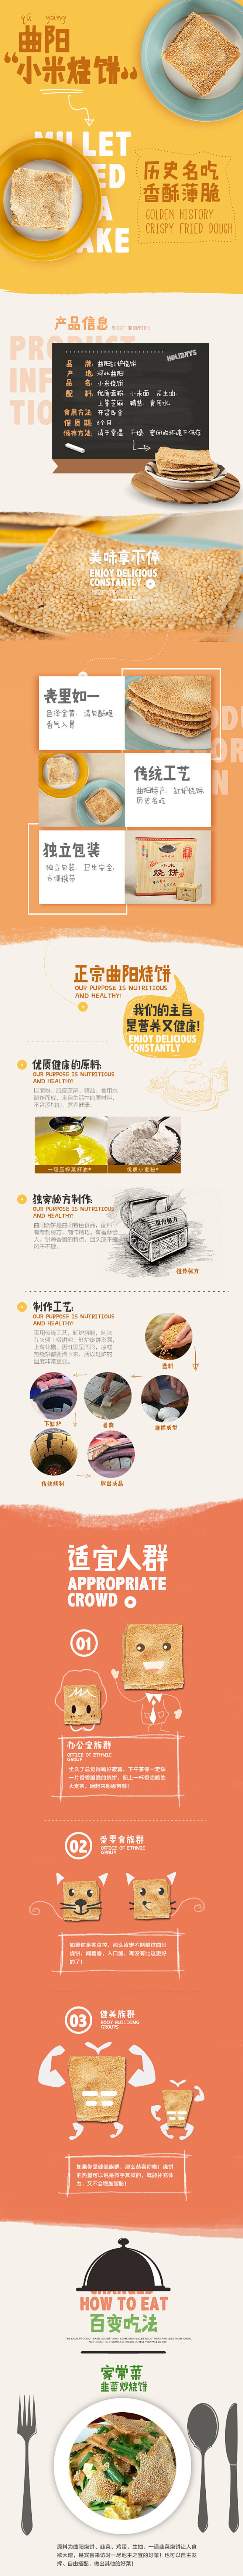 曲阳烧饼详情页设计，来源自黄蜂网http...